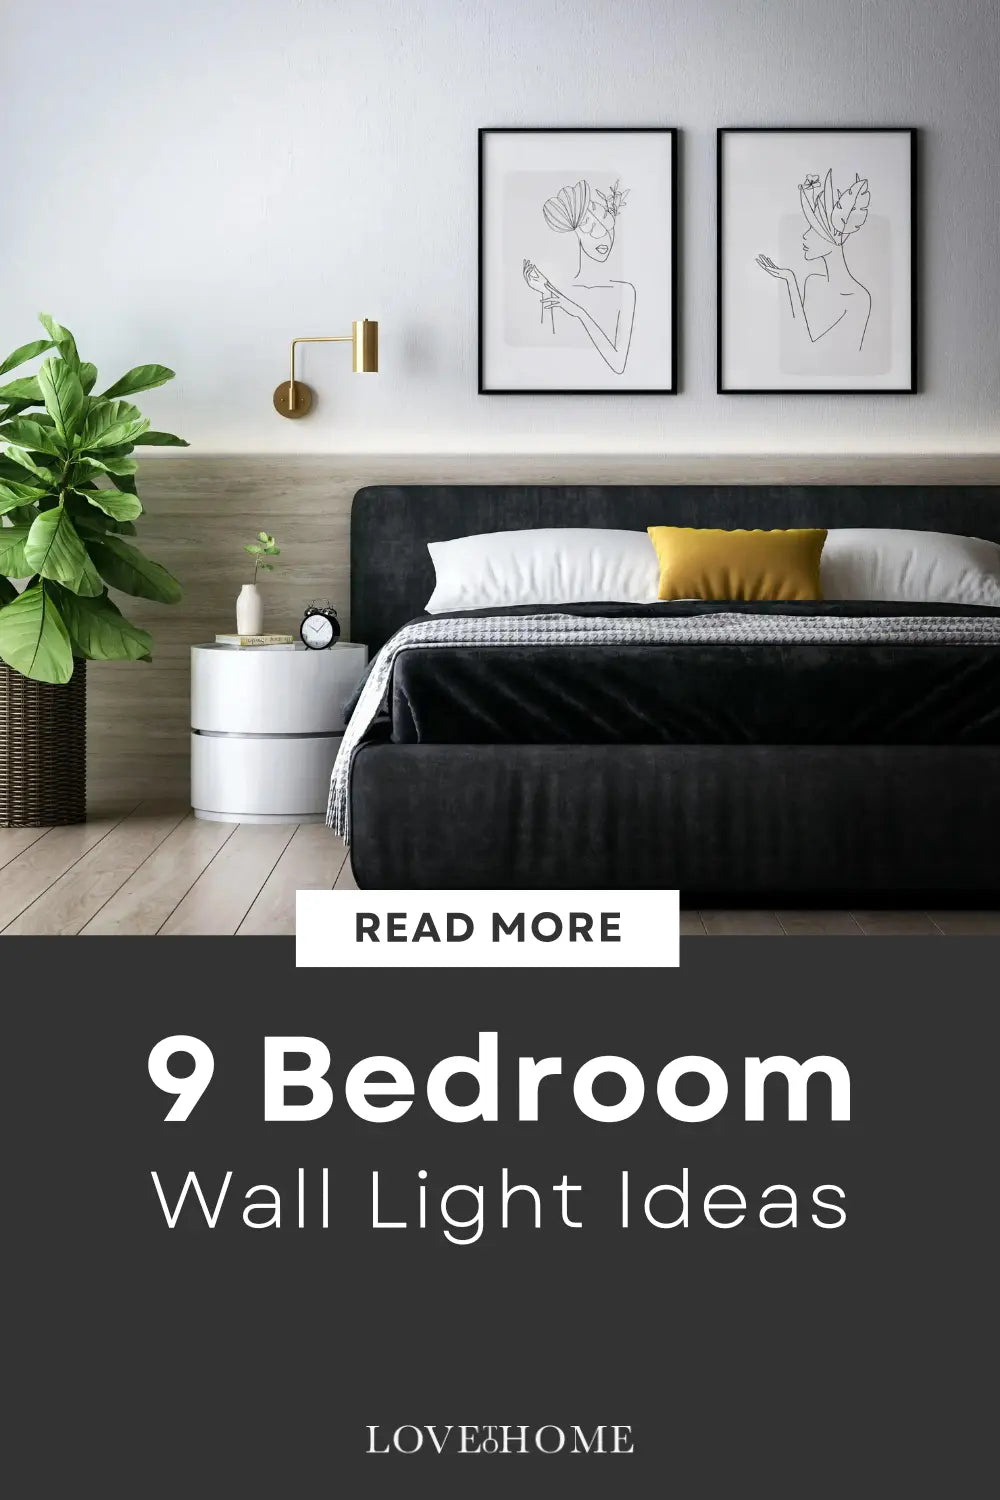 Bedroom wall light ideas